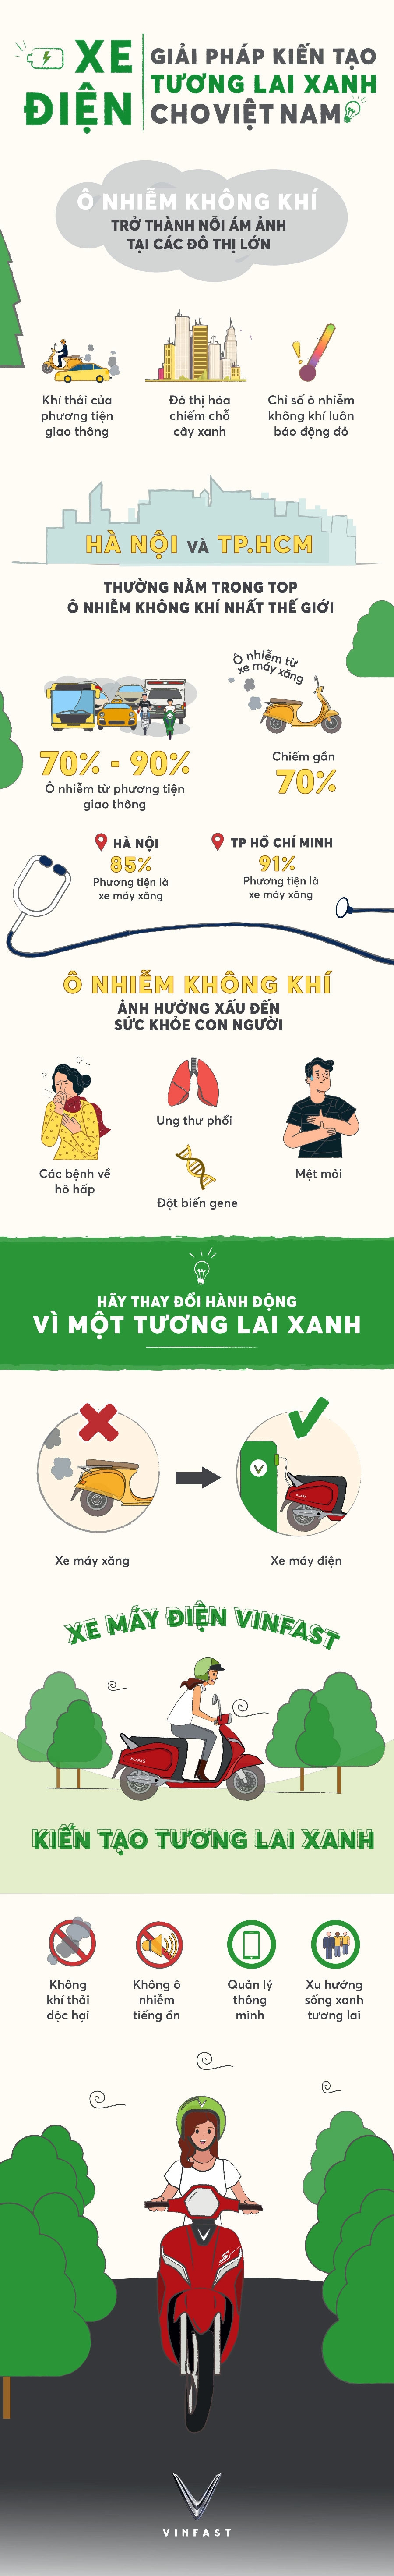 infographic-xe-dien-giai-phap-kien-tao-tuong-lai-xanh-cho-viet-nam